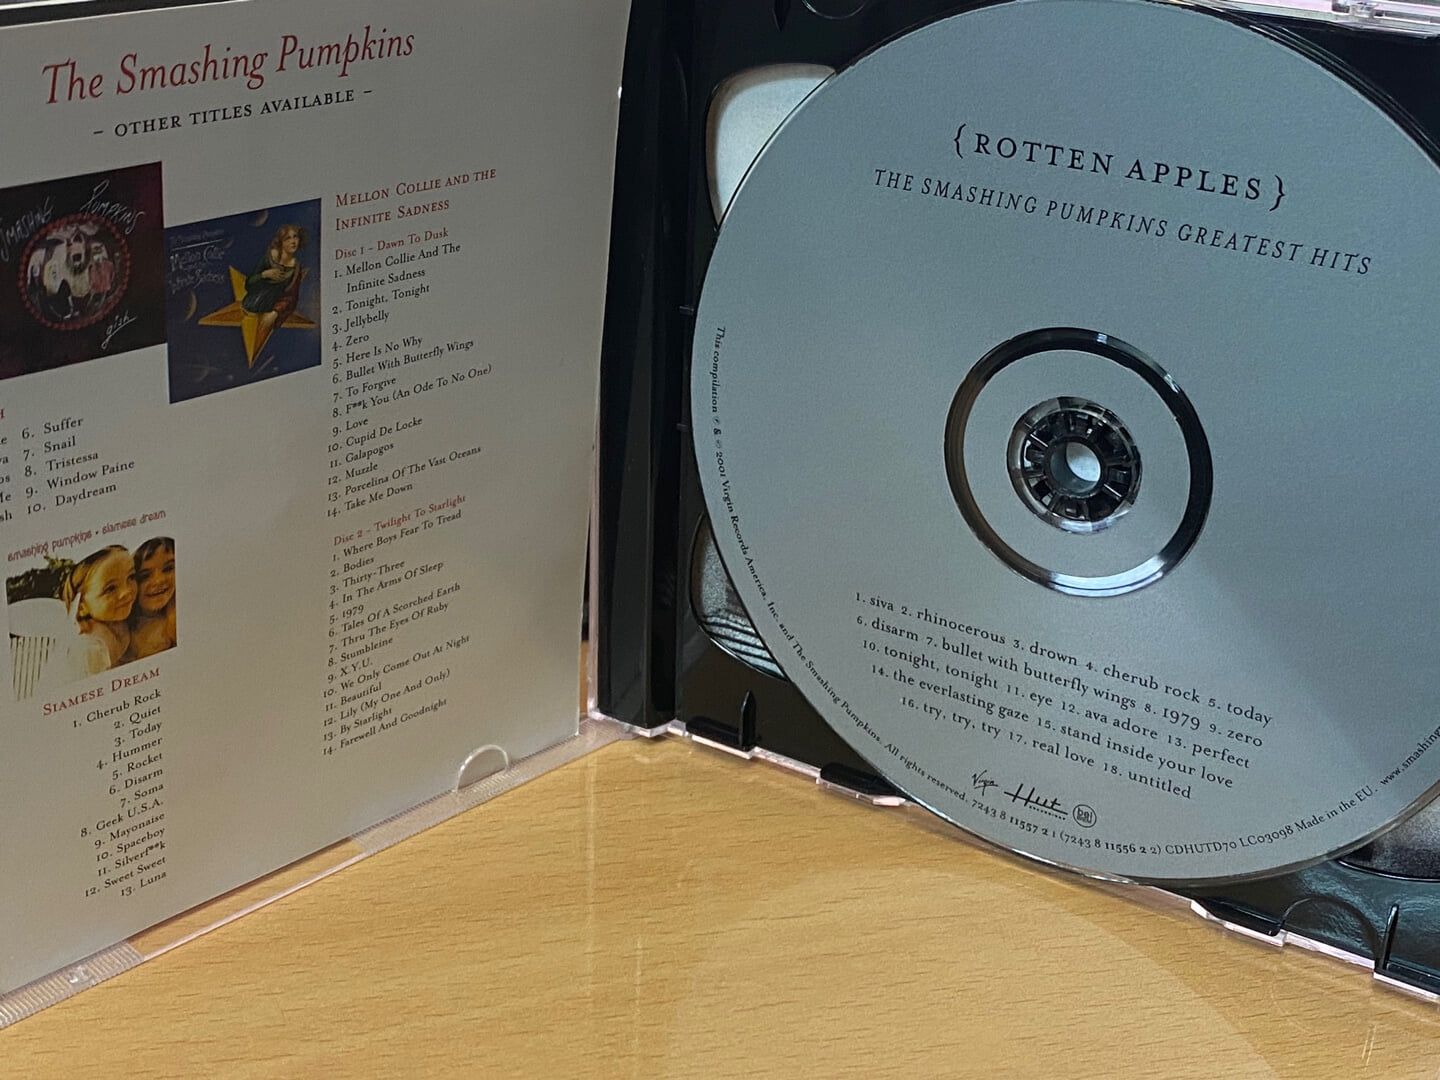 스매싱 펌킨스 - The Smashing Pumpkins - Rotten Apples - Greatest Hits [E.U발매]